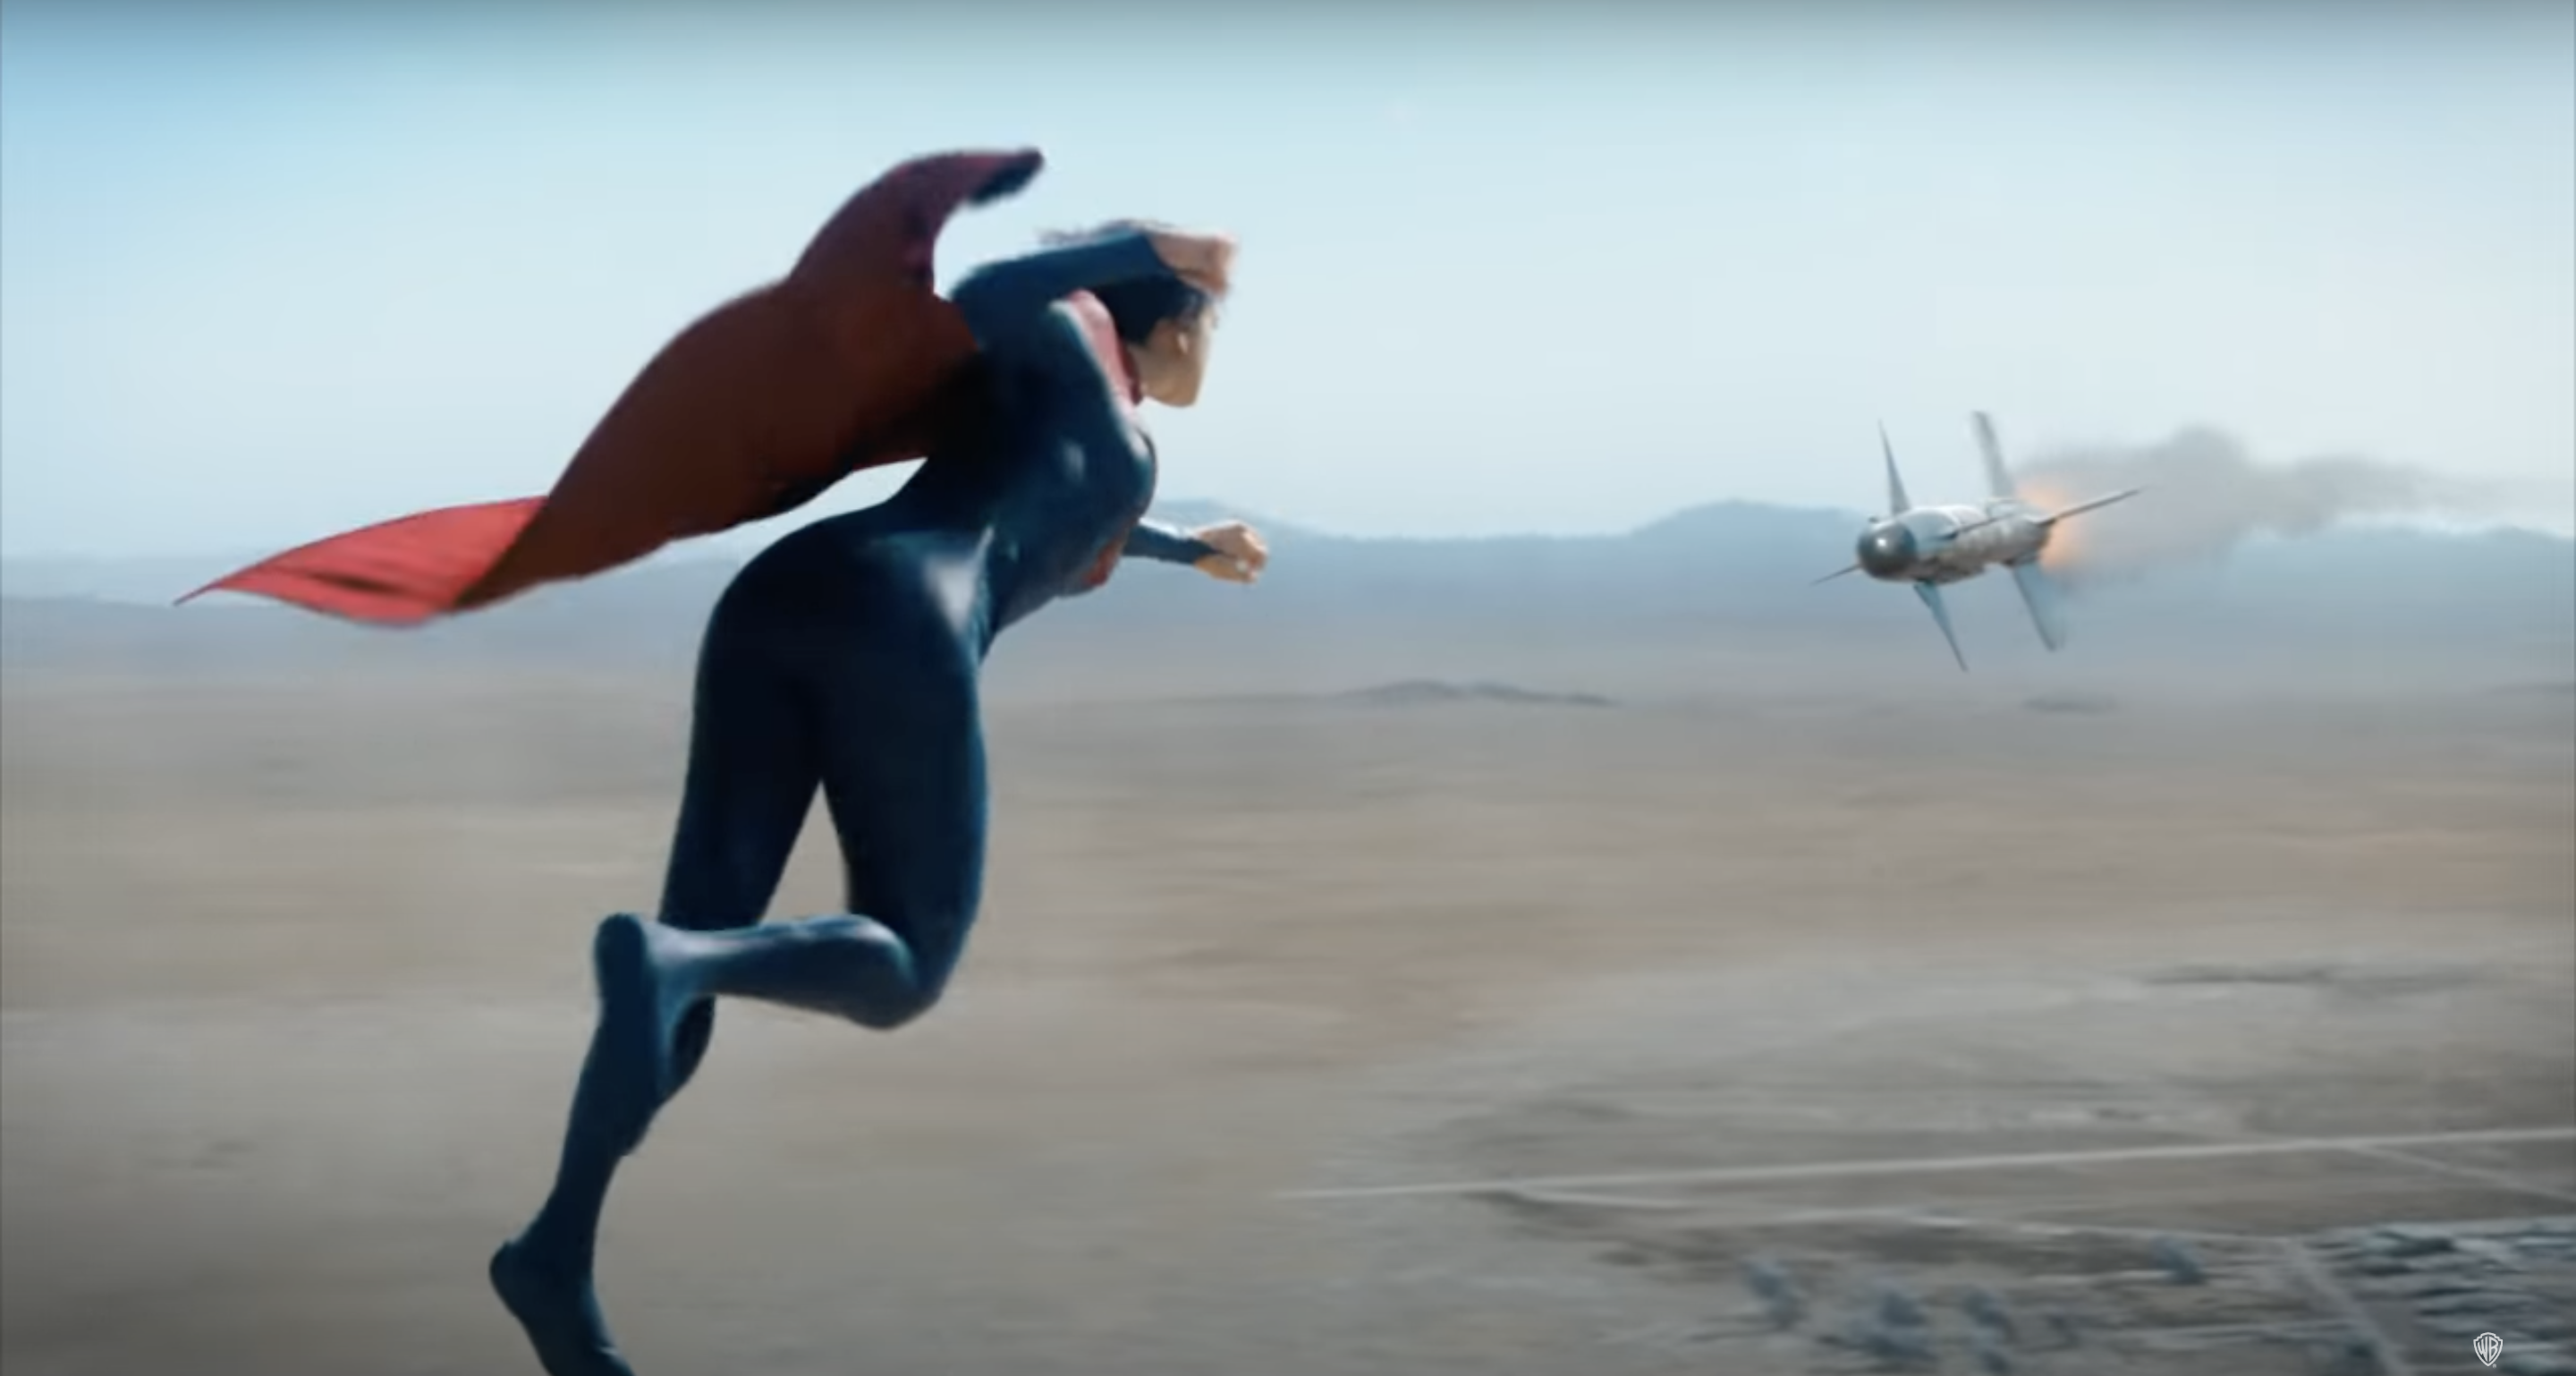 Kara flying towards an aircraft